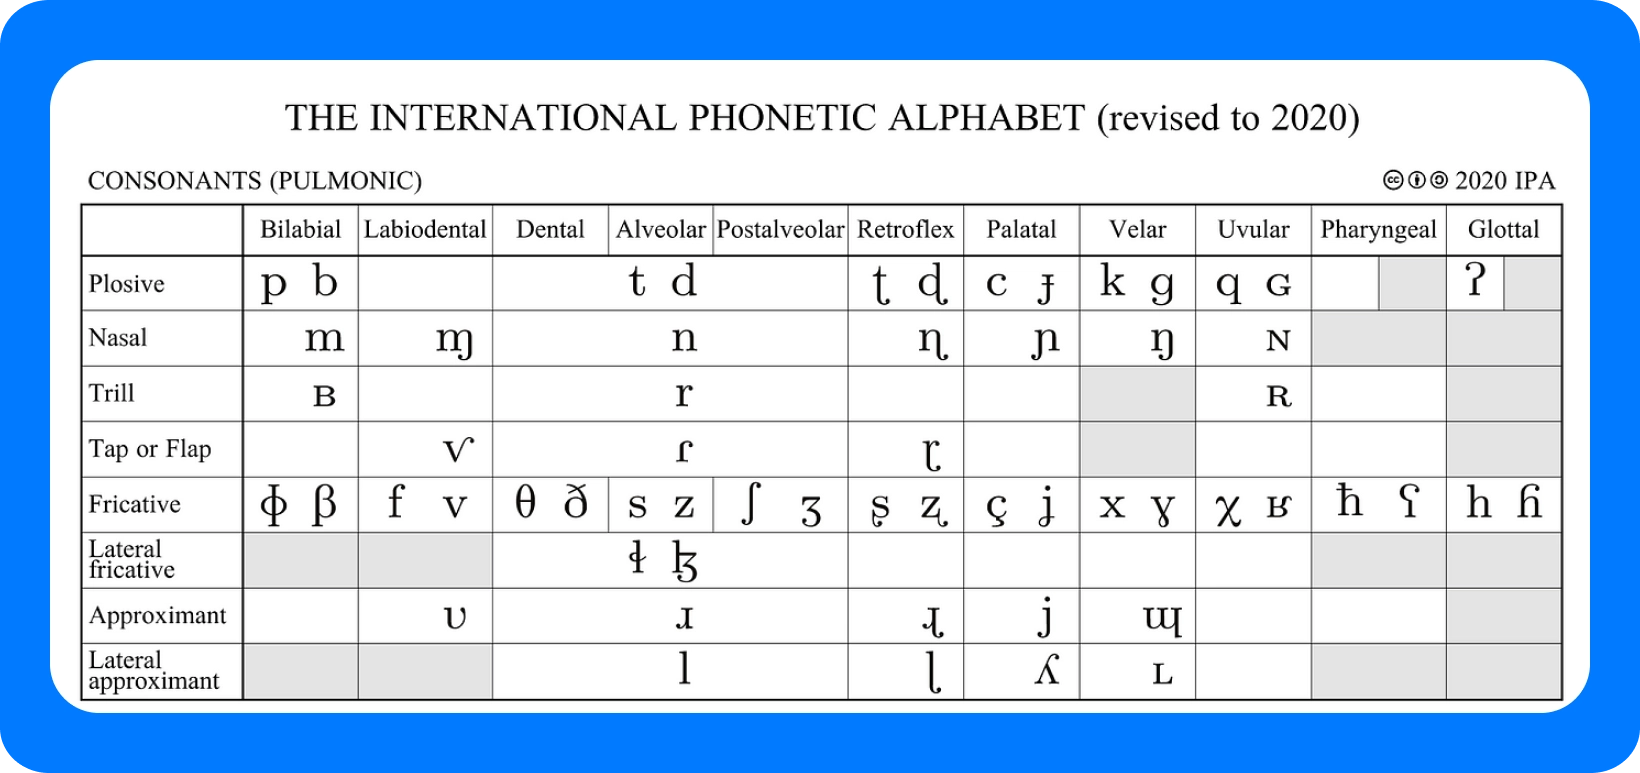 Gráfico do Alfabeto Fonético Internacional para consoantes, revisado em 2020, detalhando pontos de articulação.